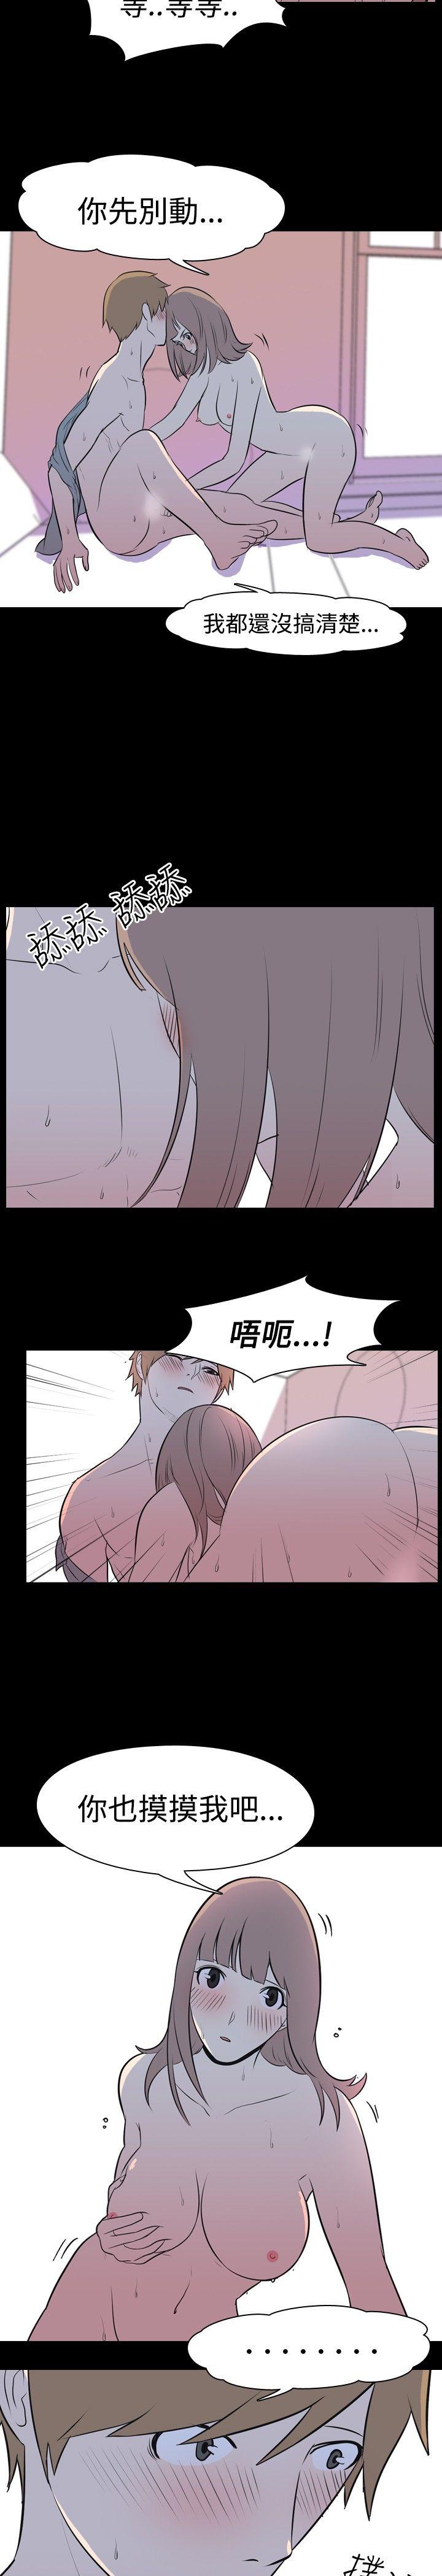 韩国污漫画 我的色色夜說 第13话-暗恋(下) 3